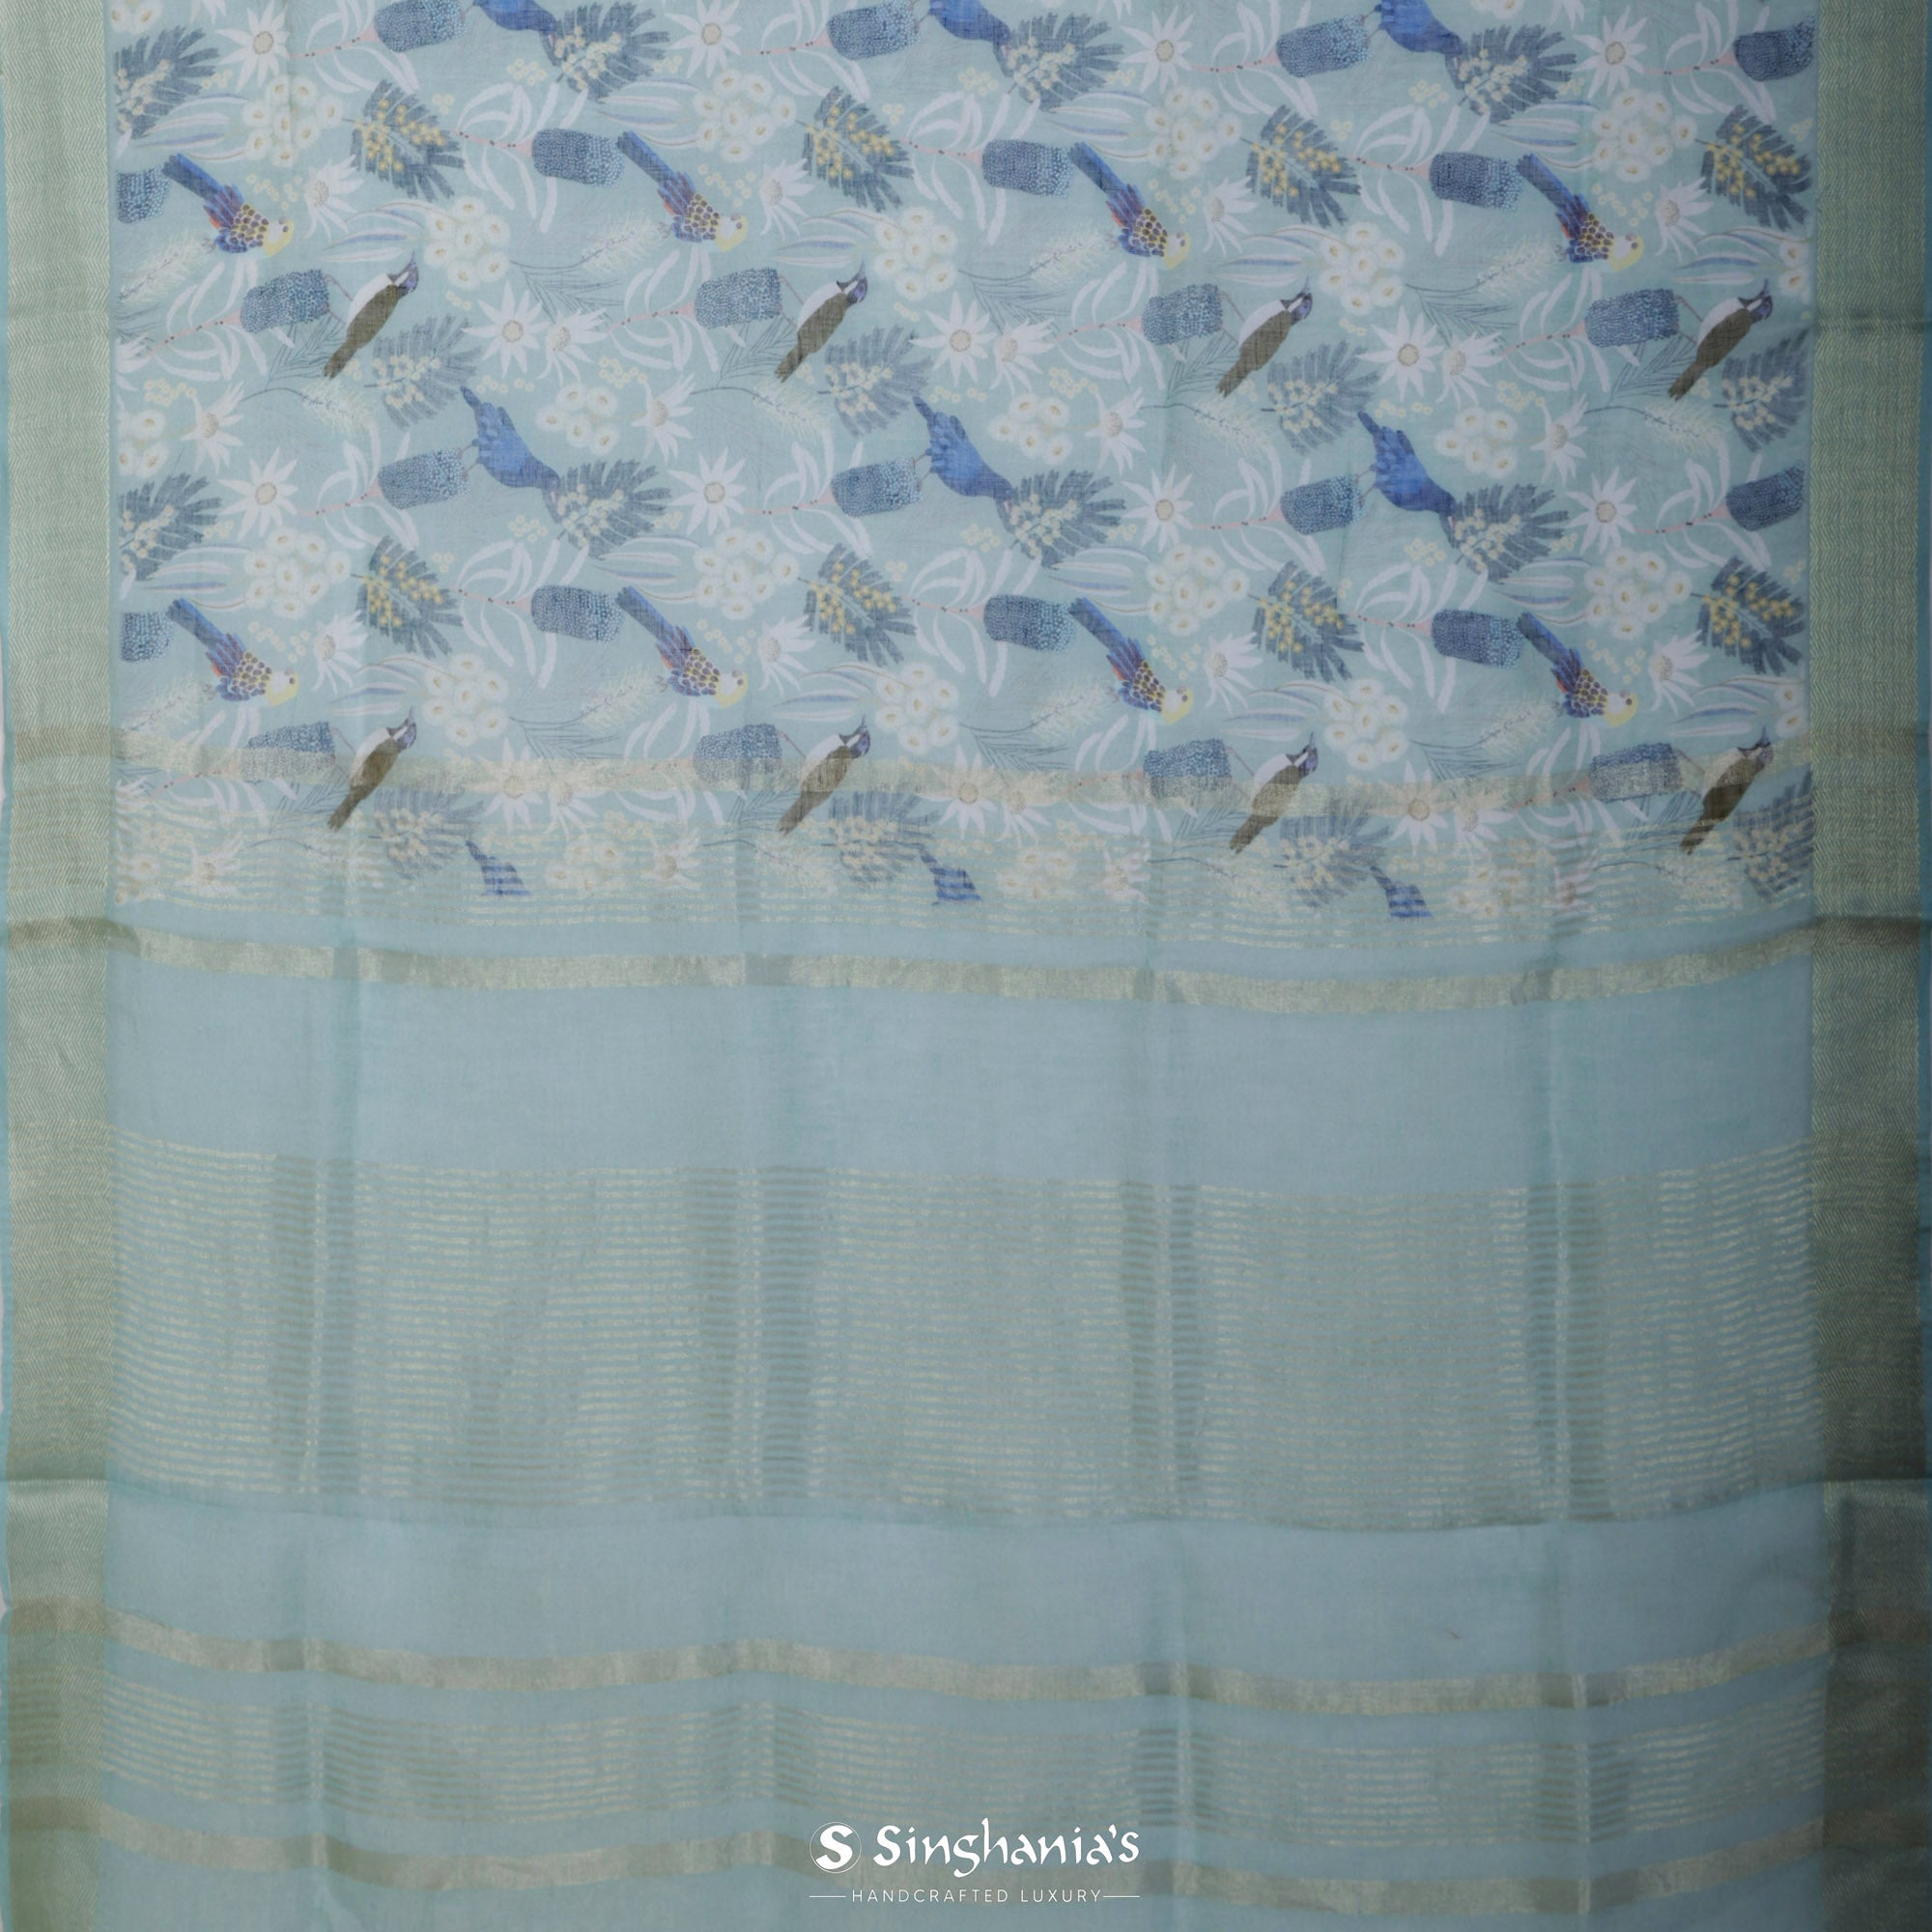 Arctic Blue Printed Linen Saree With Floral Bird Design